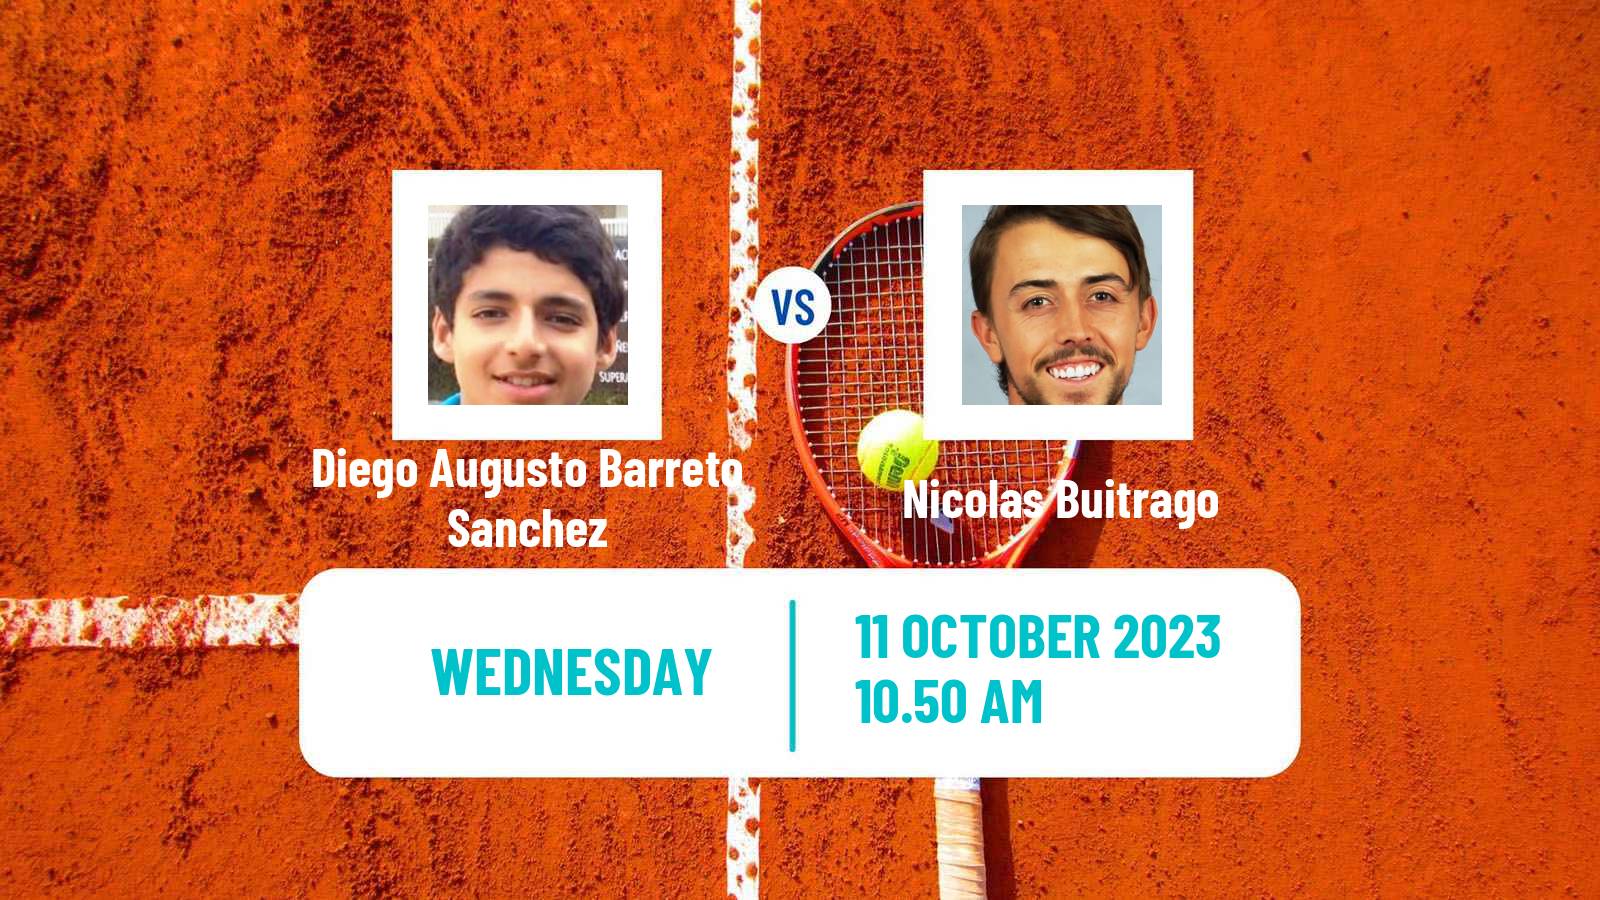 Tennis ITF M15 Vigo Men Diego Augusto Barreto Sanchez - Nicolas Buitrago